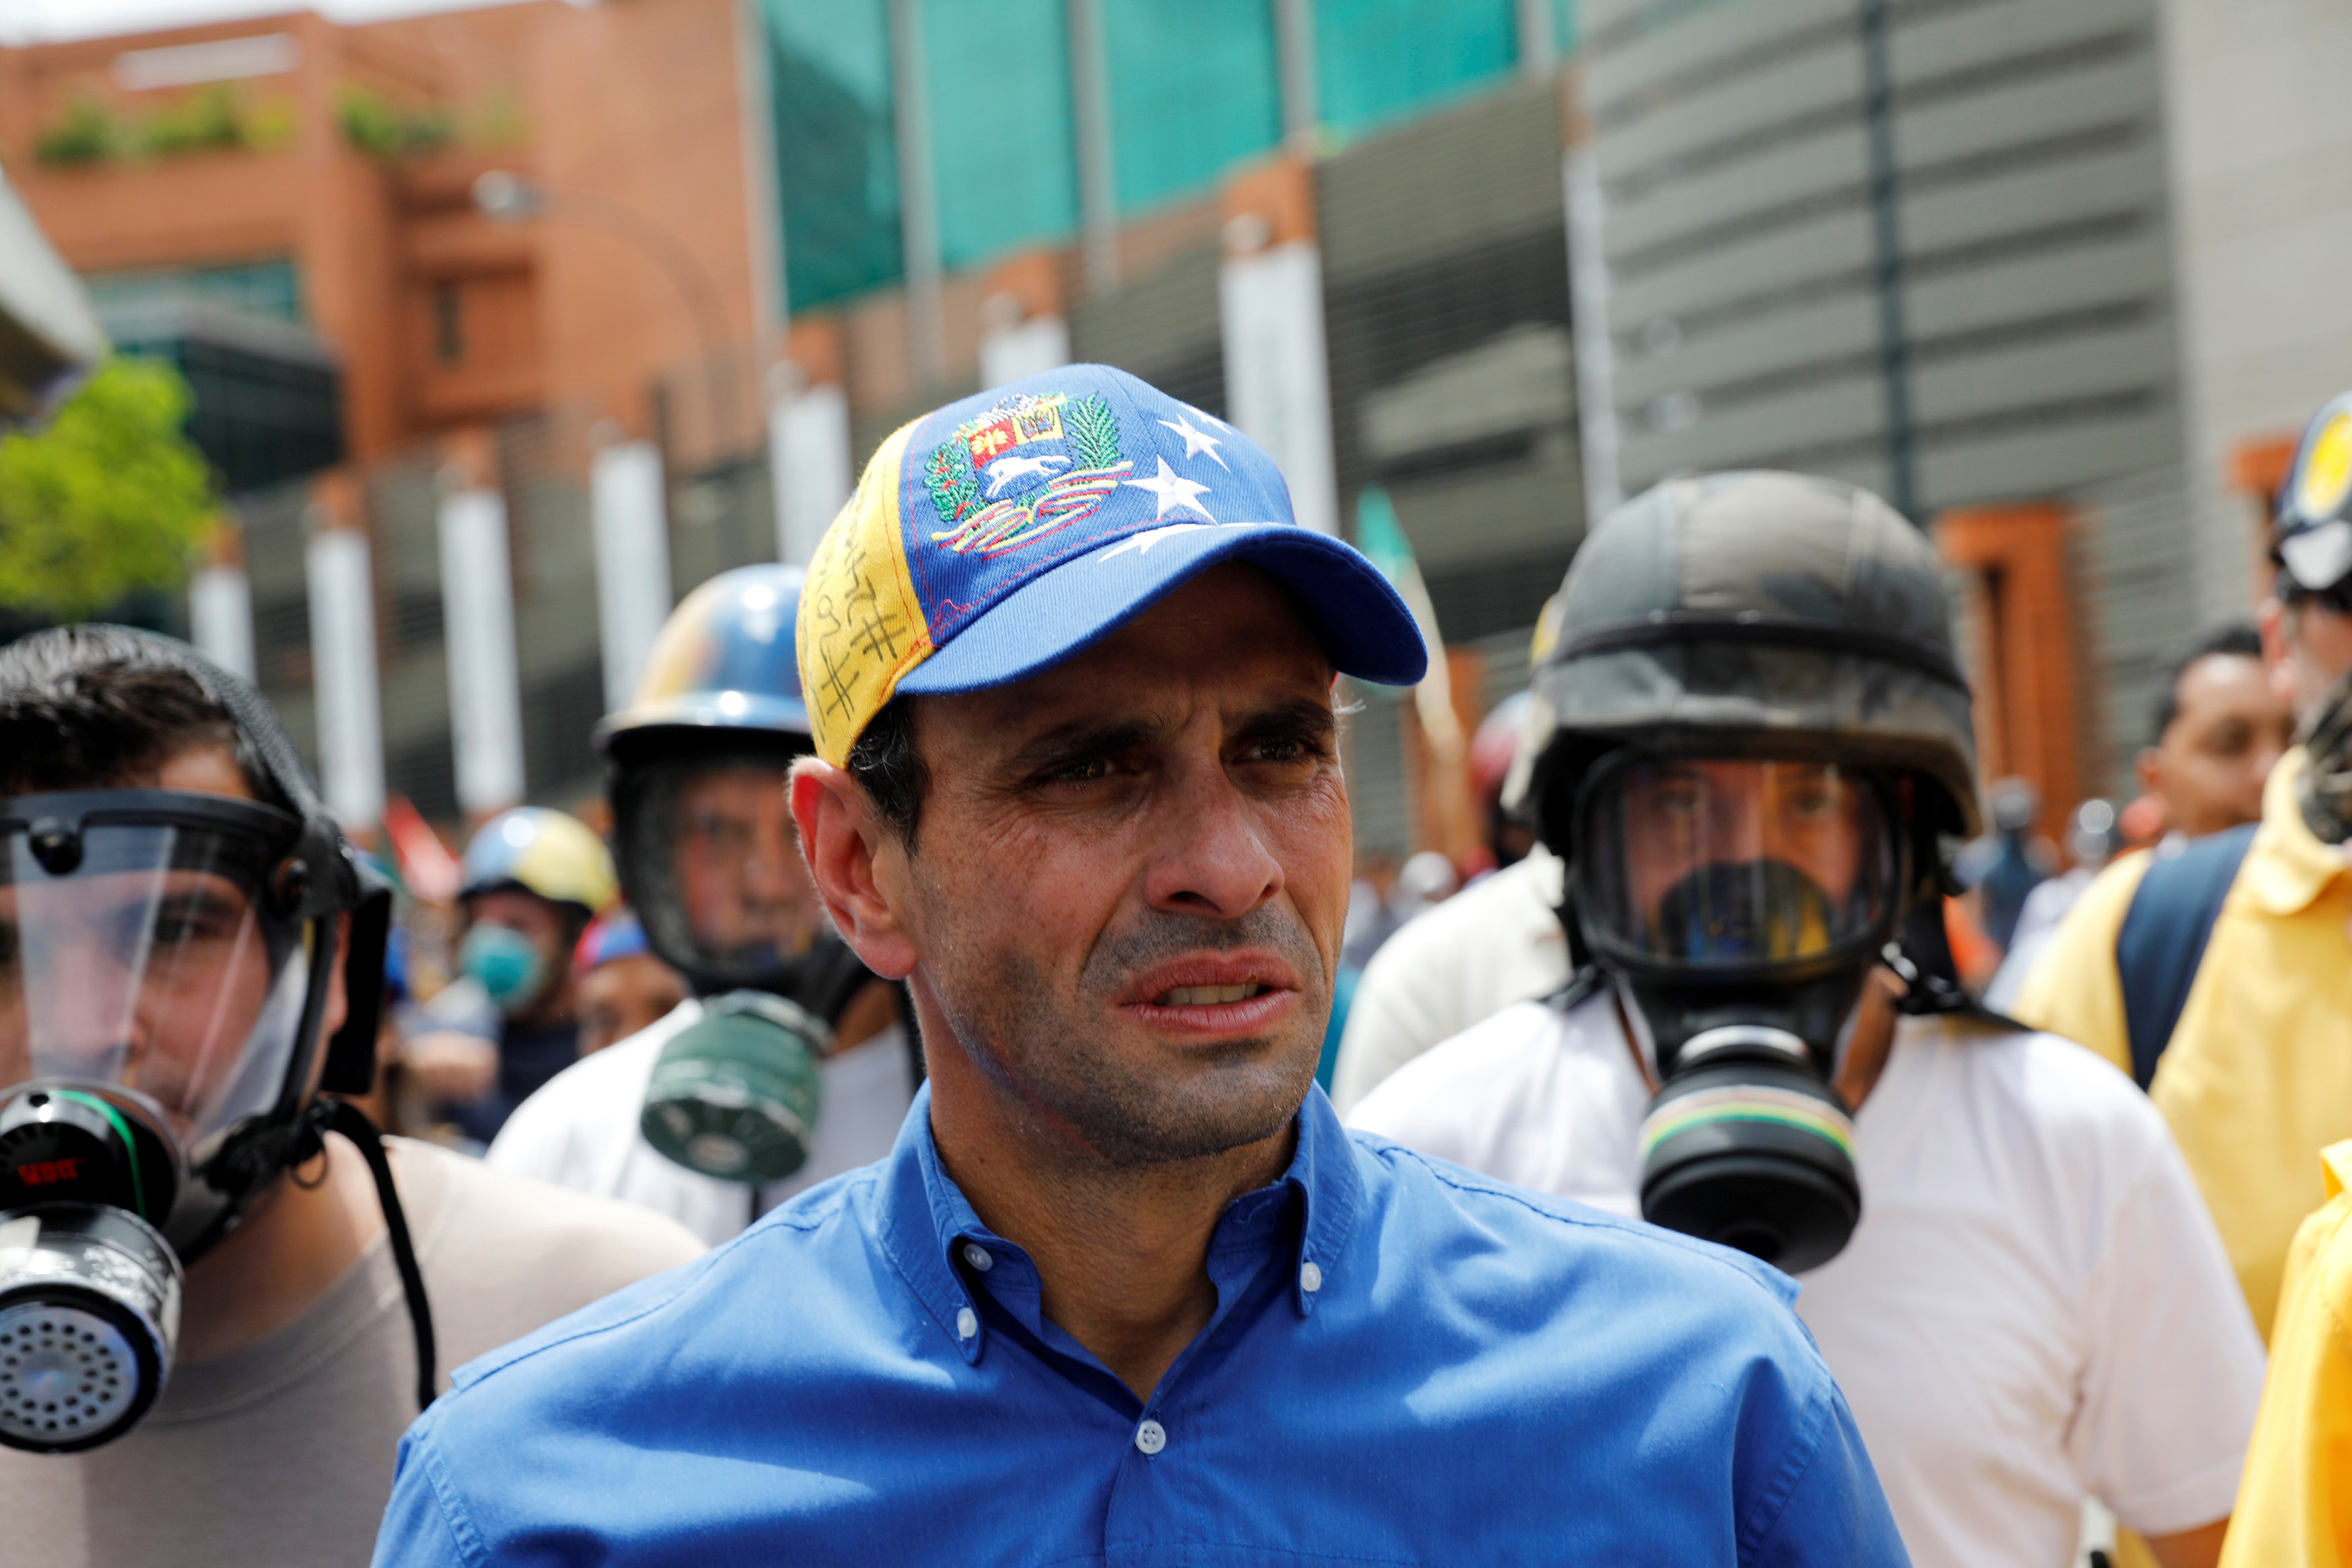 Capriles alerta que la “narco cúpula” de Maduro busca desvirtuar la protesta con violencia y anarquía